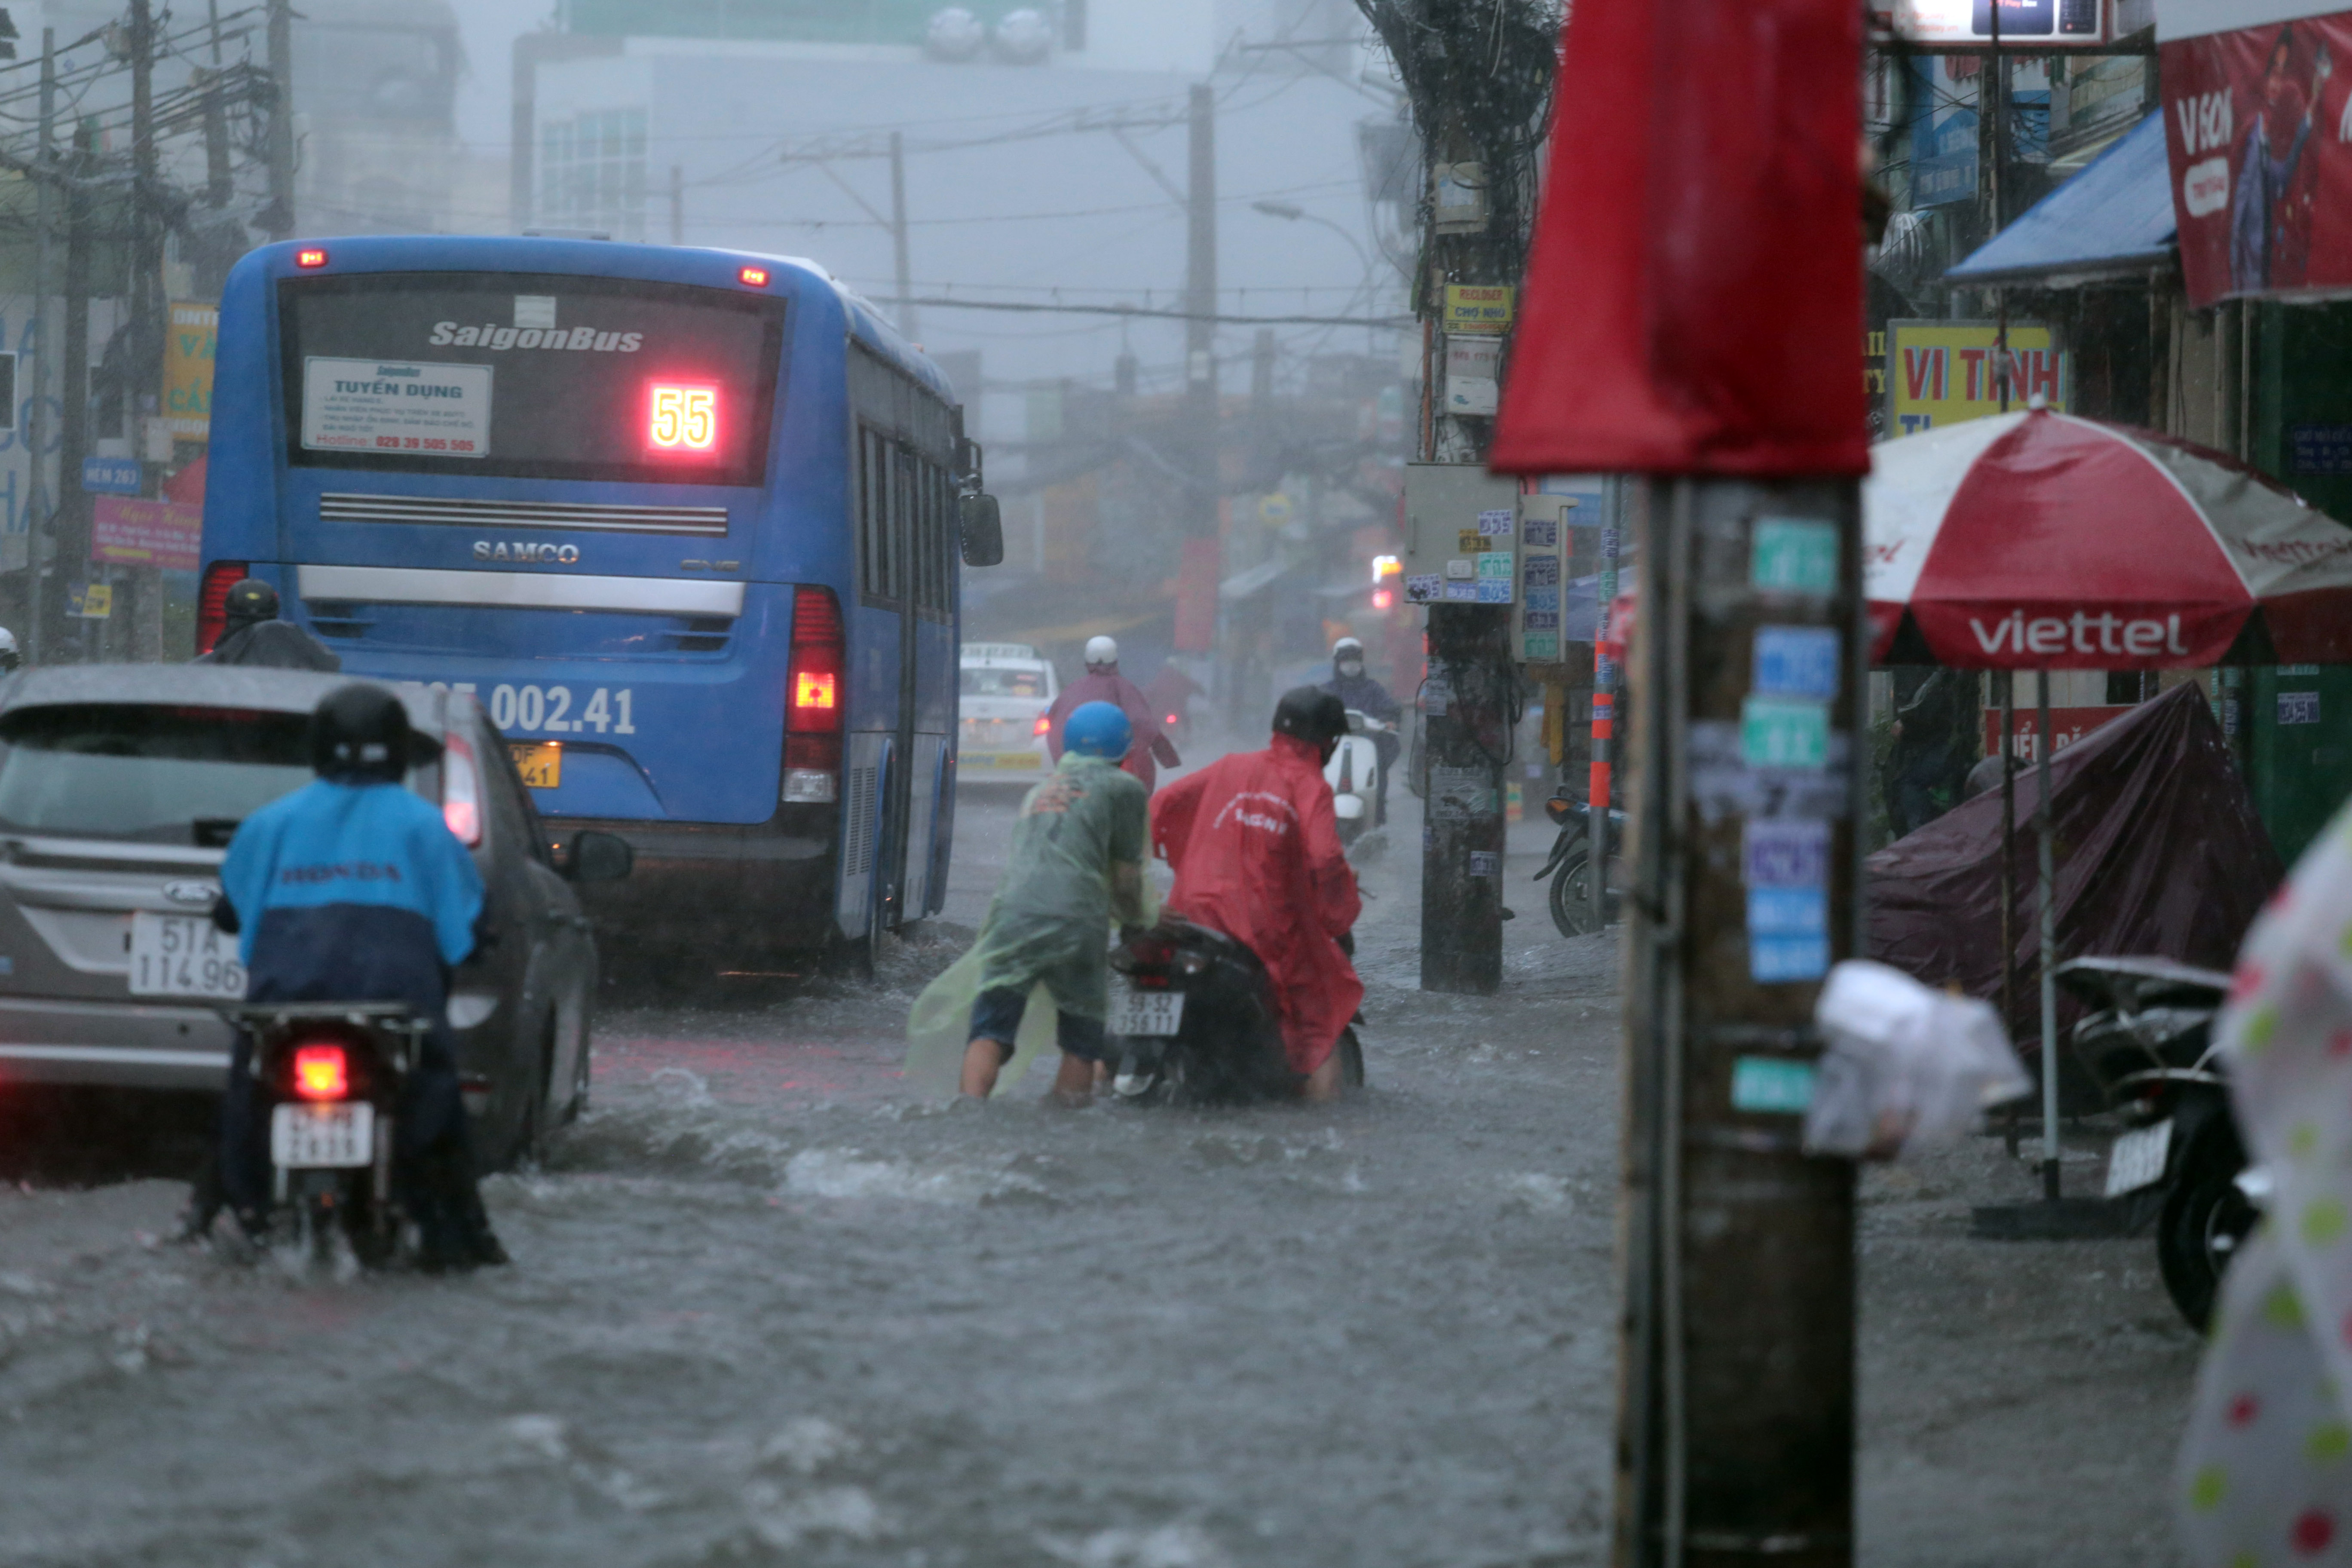 Sài Gòn mưa tầm tã, xe máy ngập gần tới yên, ô tô chết máy bồng bềnh trong nước - 2